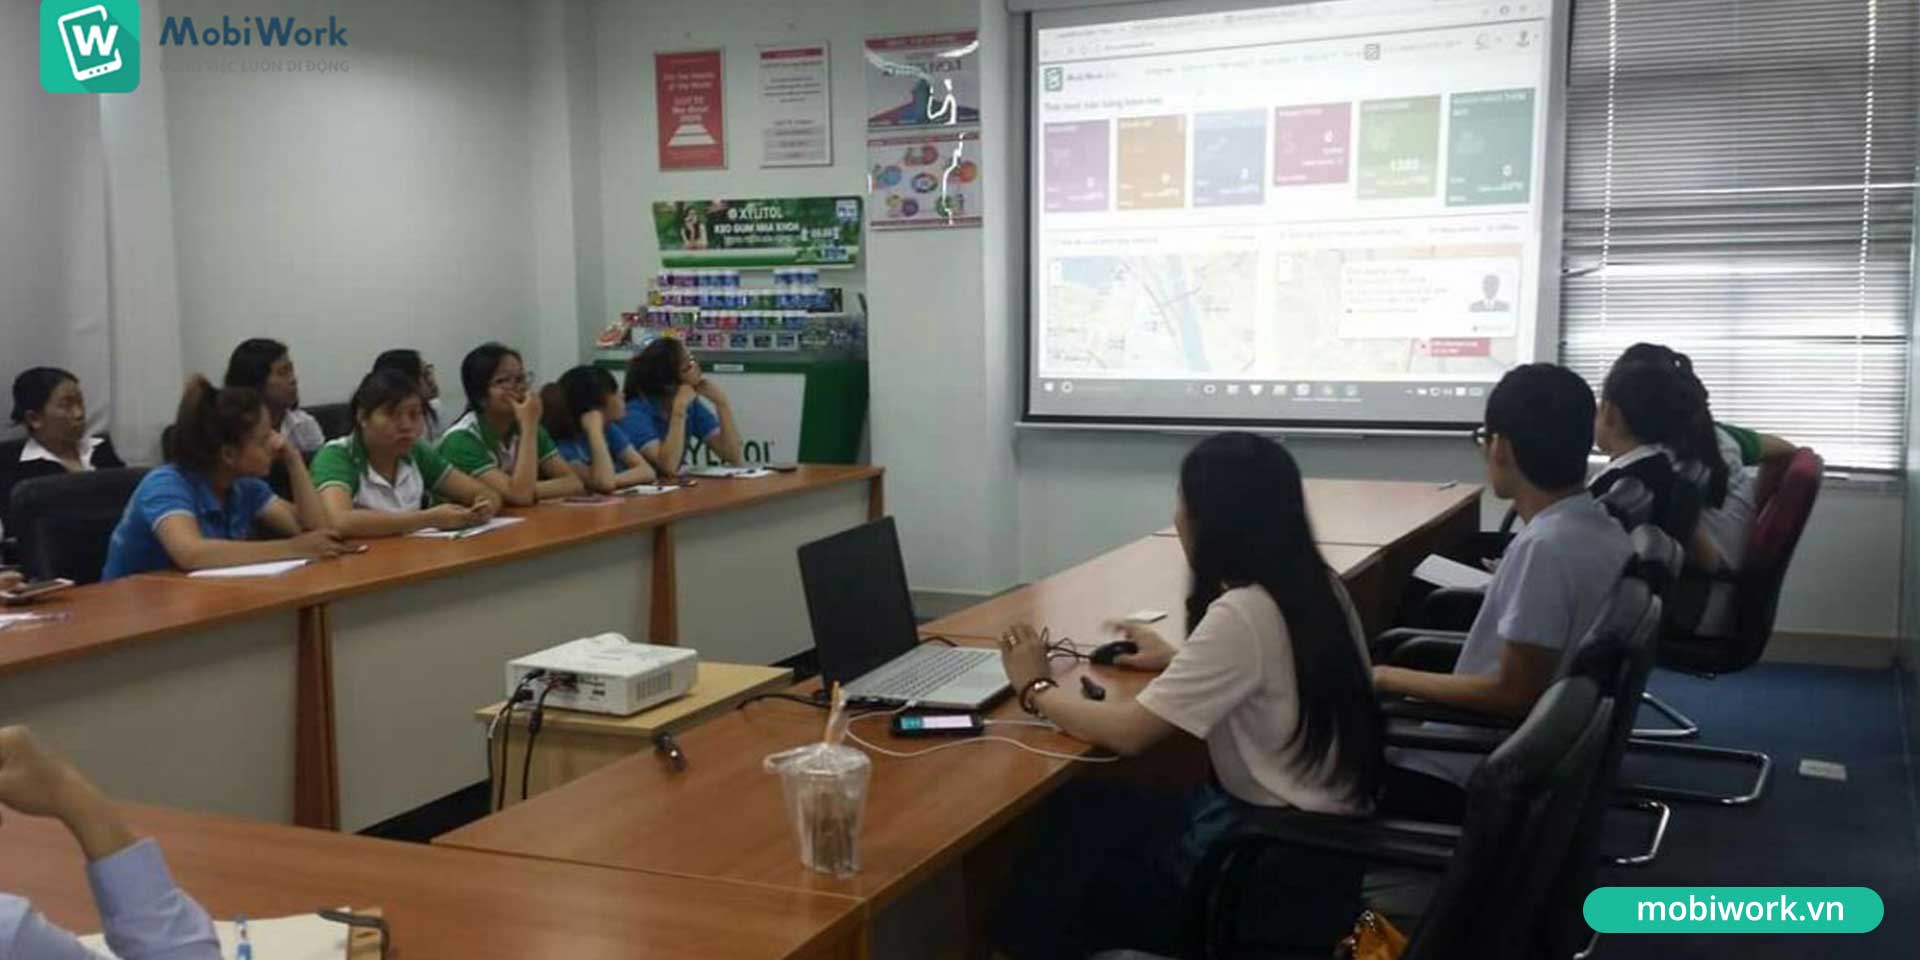 Lotte Việt Nam triển khai thành công giải pháp Quản lý hệ thống phân phối MobiWork DMS